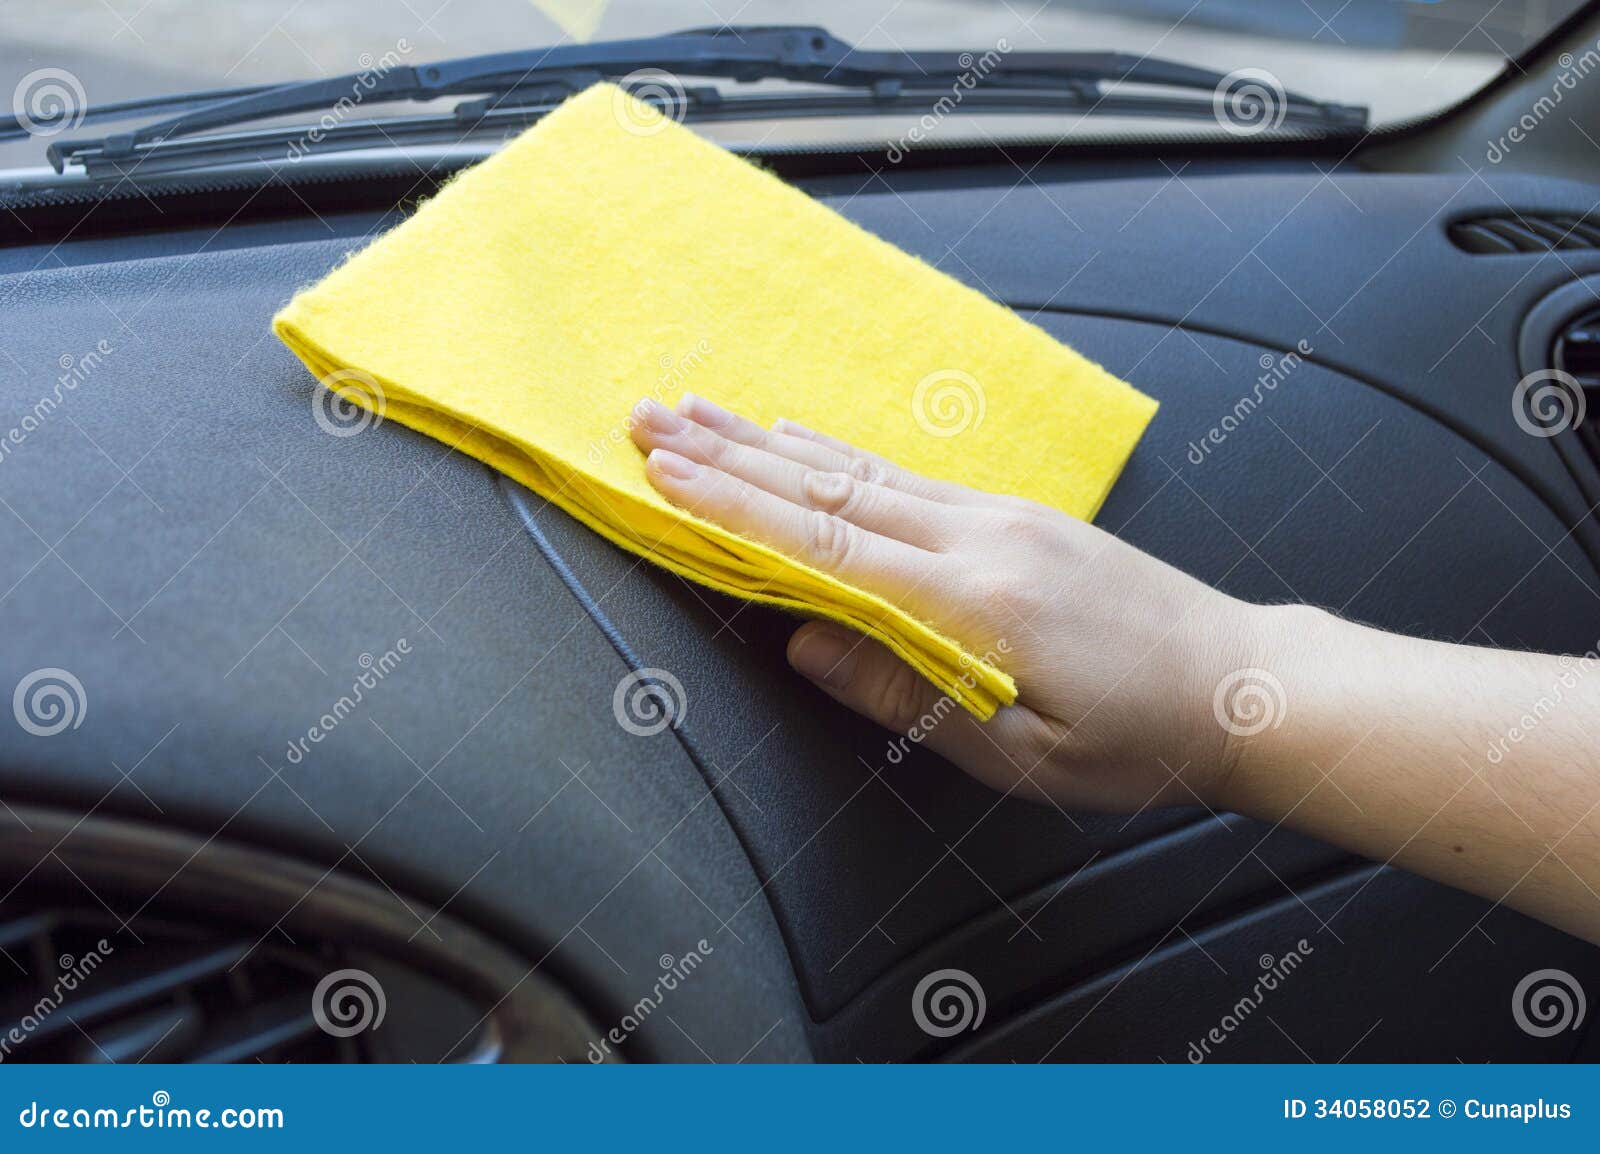 Nettoyage de l'intérieur de voiture. Équipez nettoyer l'intérieur de voiture avec le tissu jaune